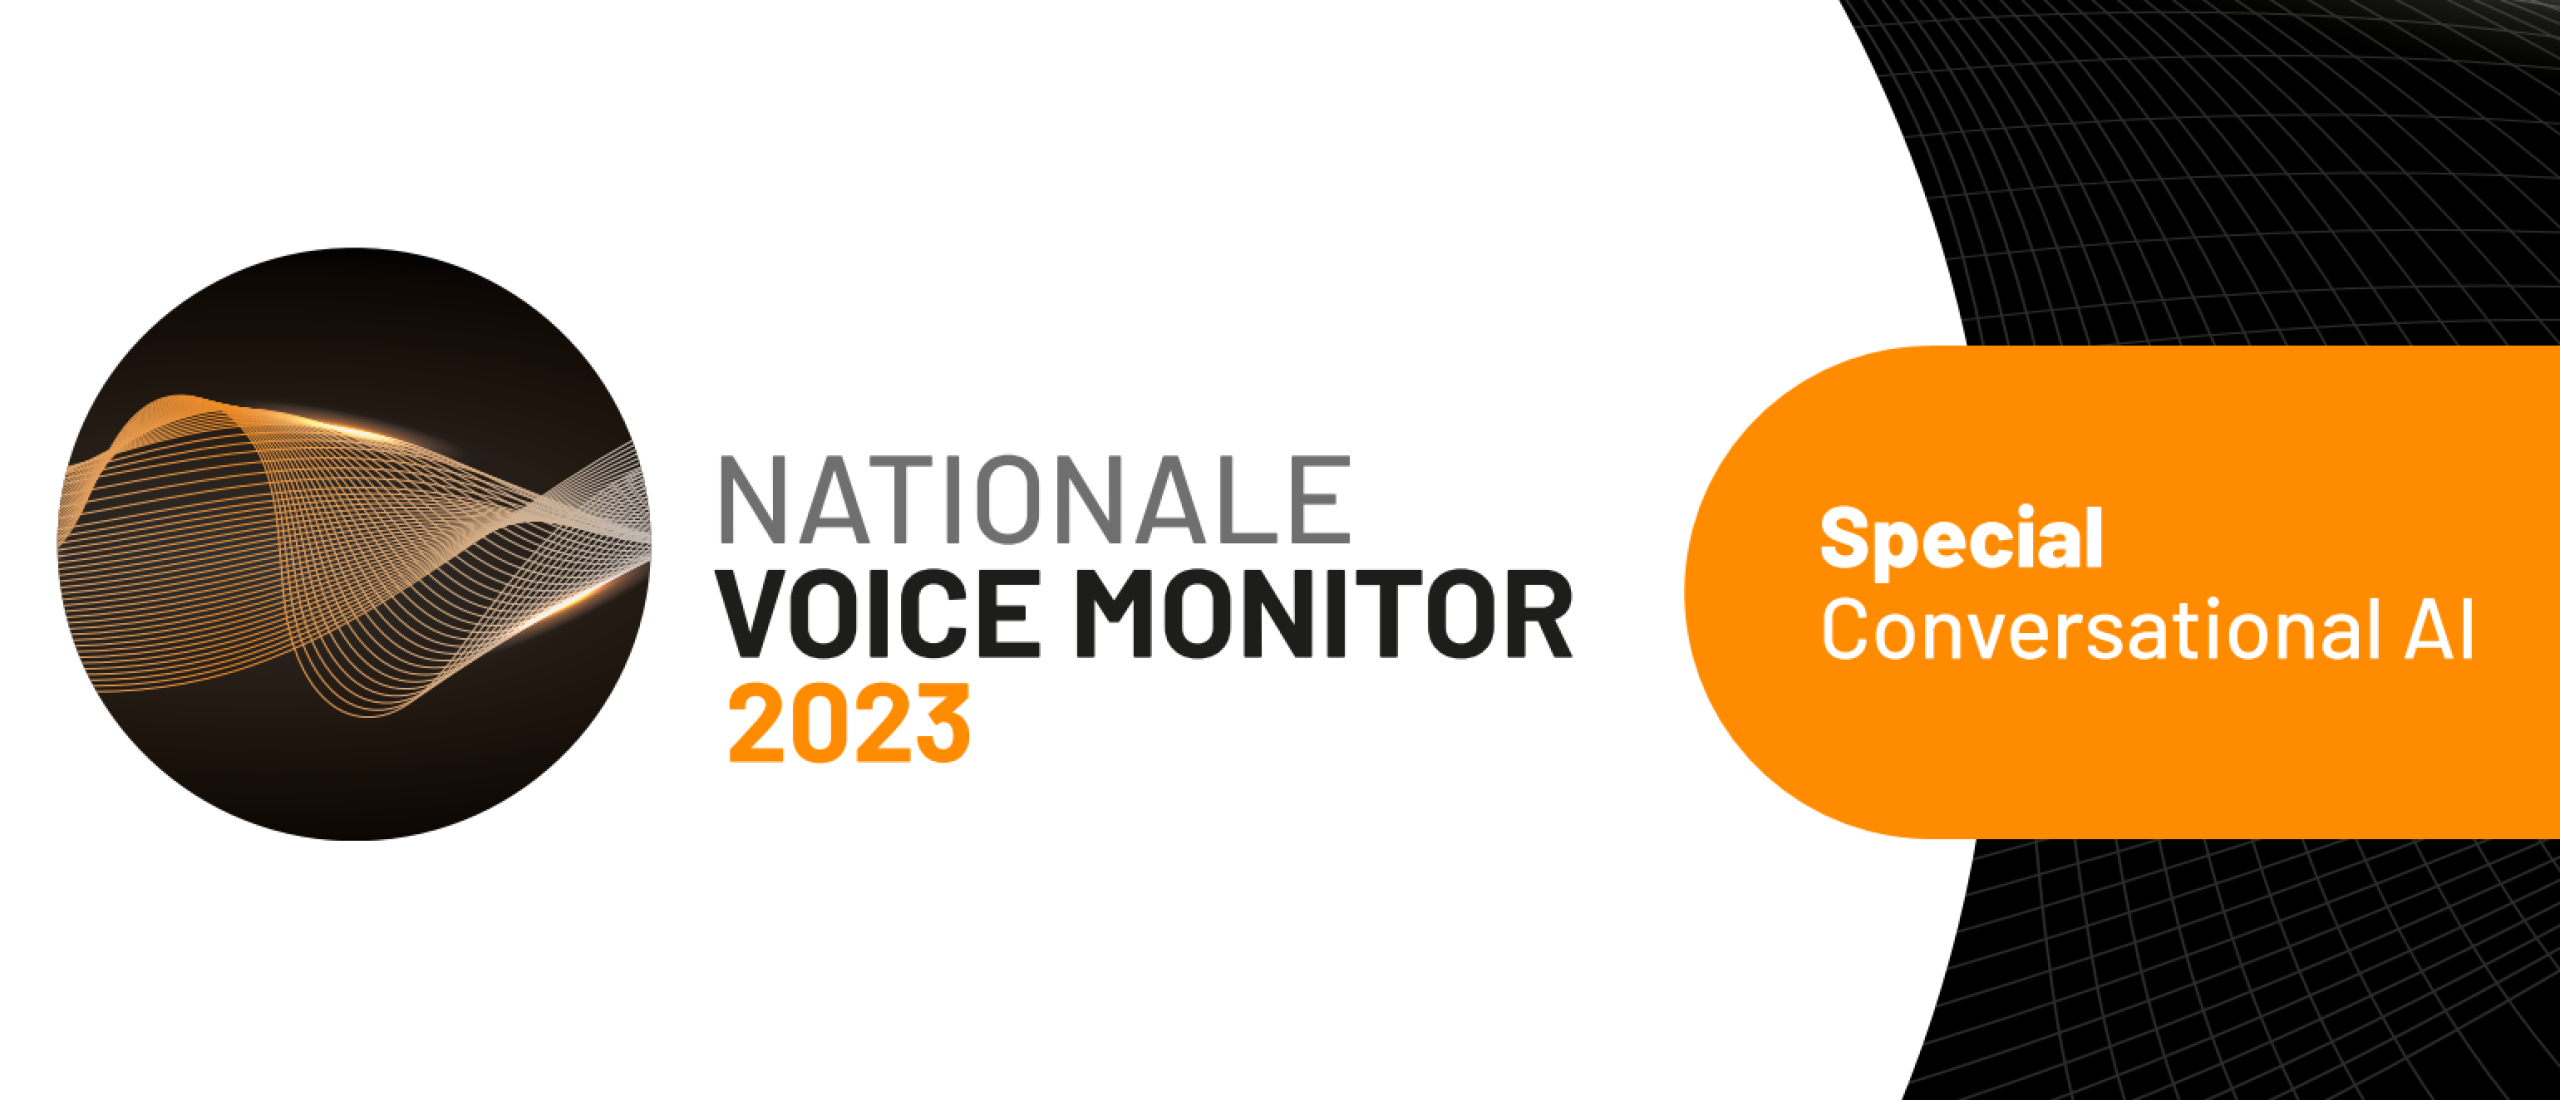 Nationale Voice Monitor 2023 publicatie